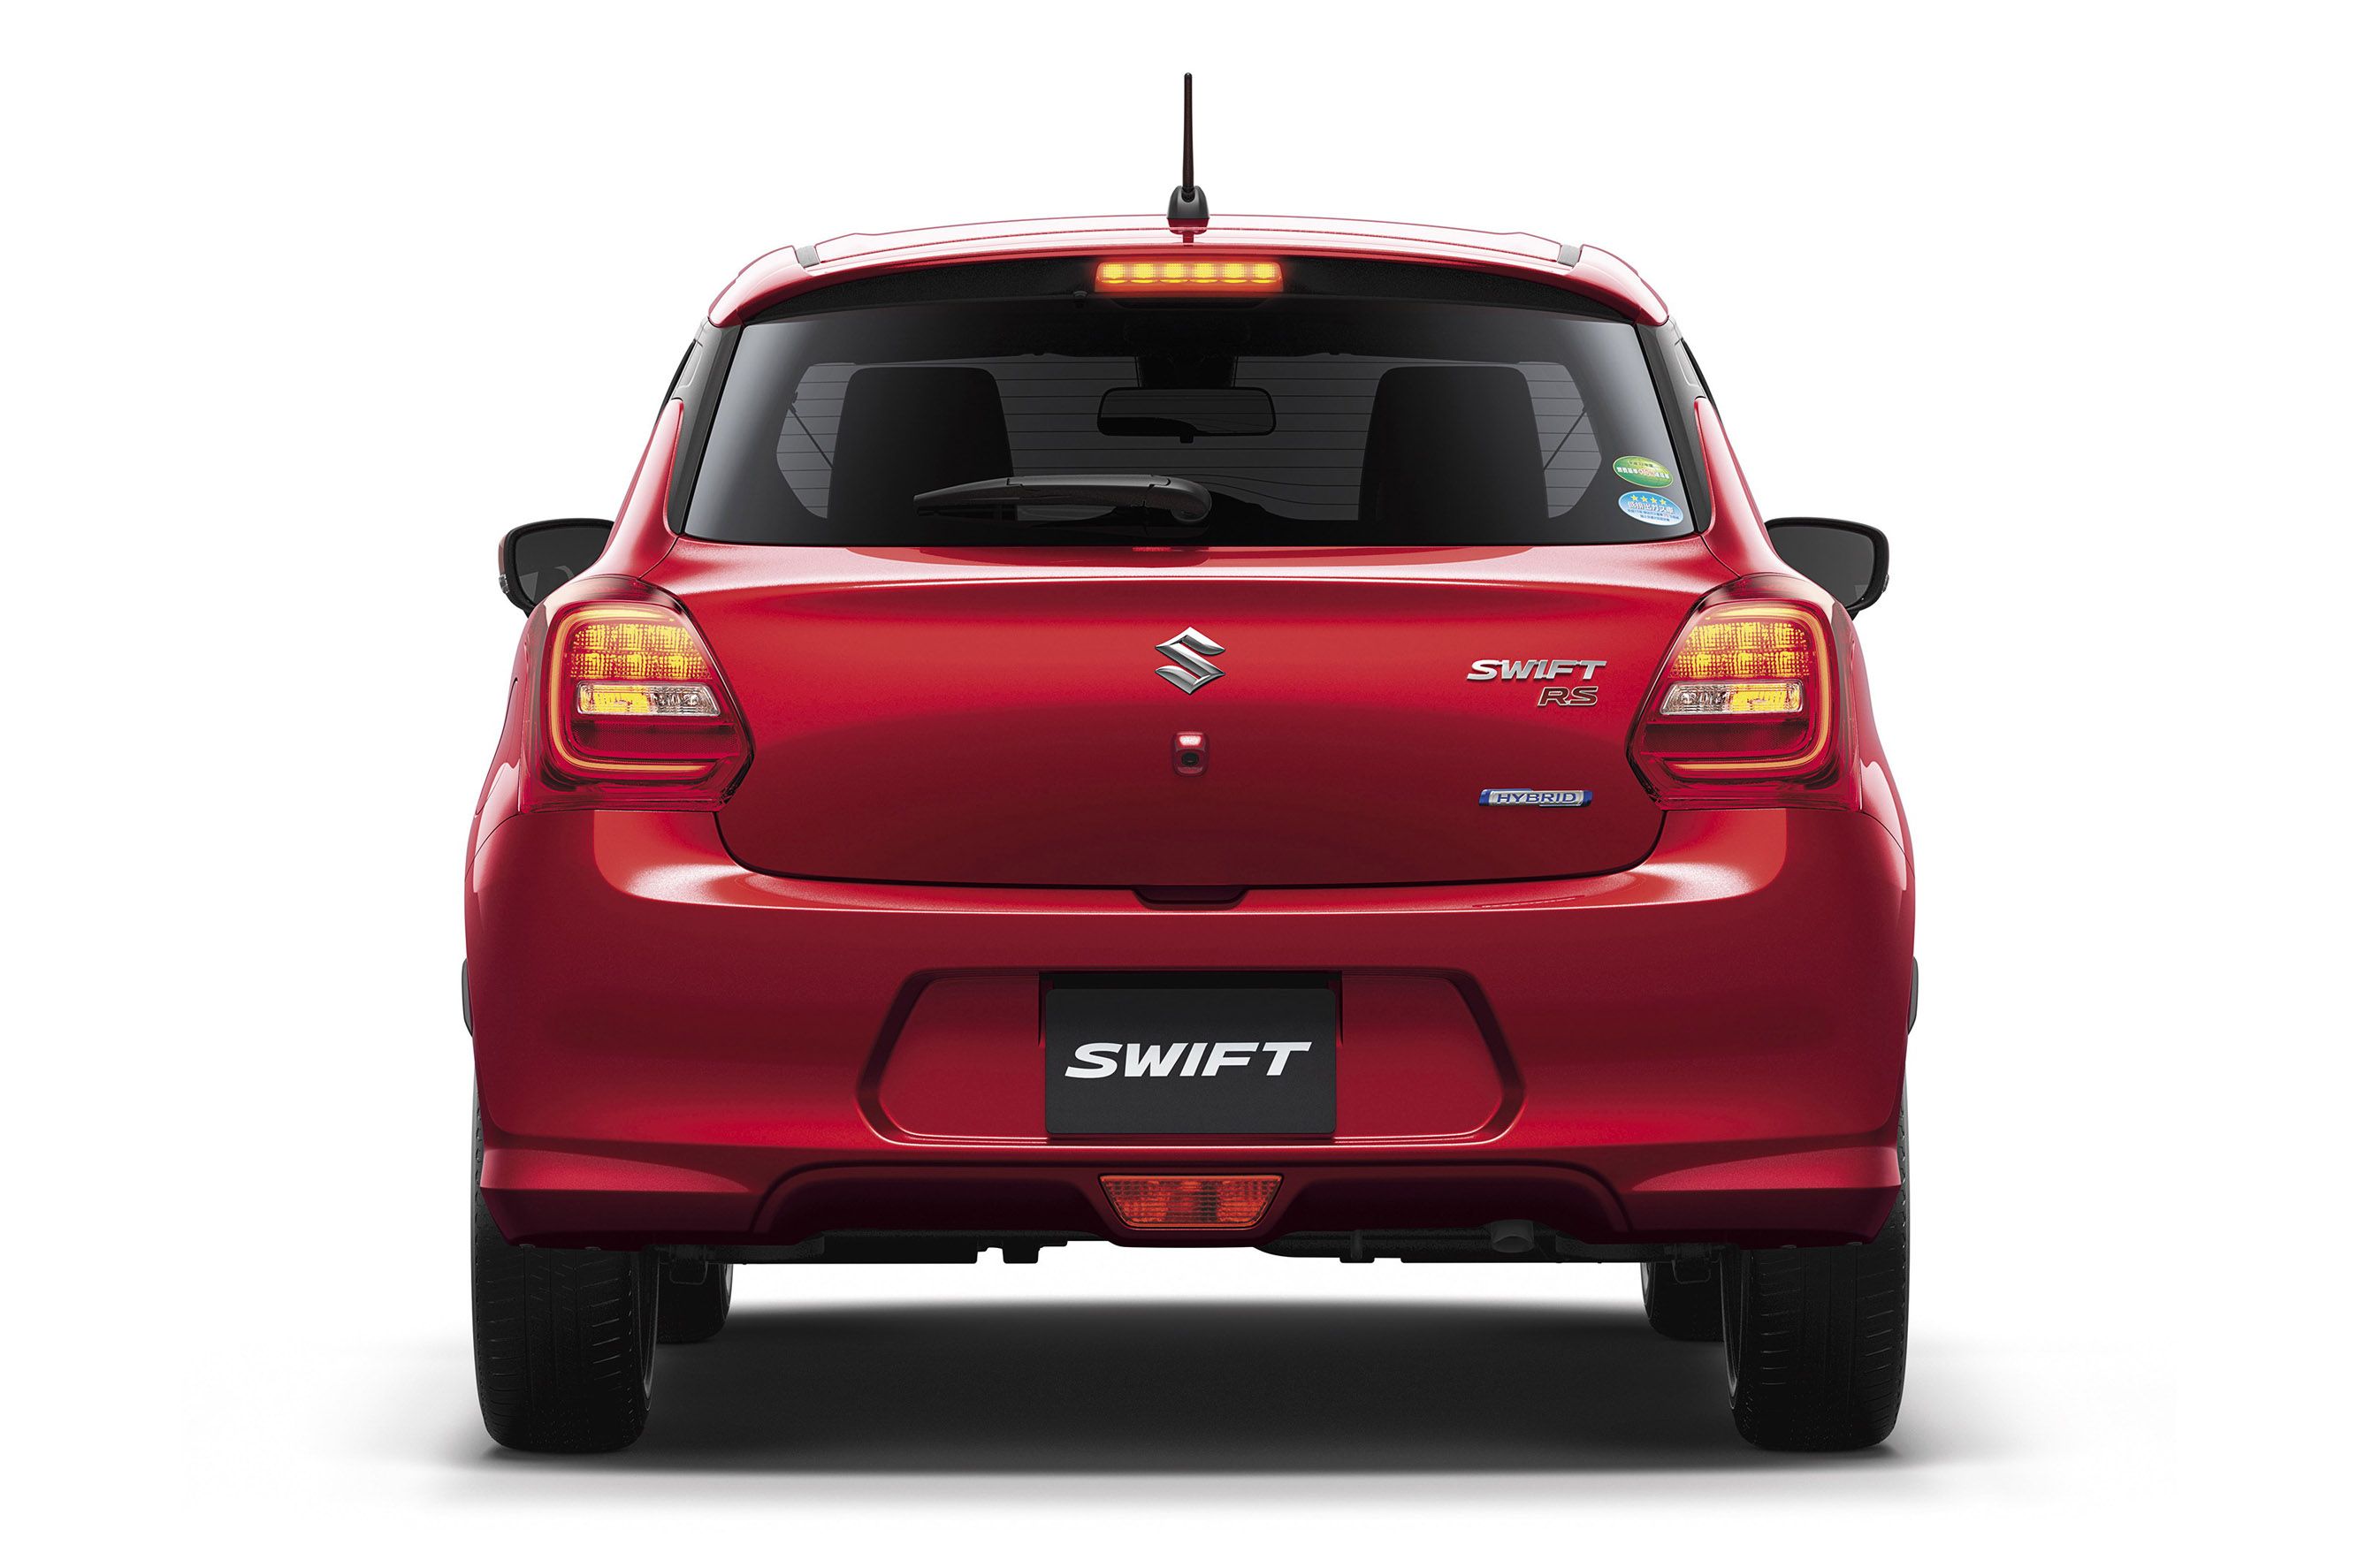 2017 Suzuki Swift